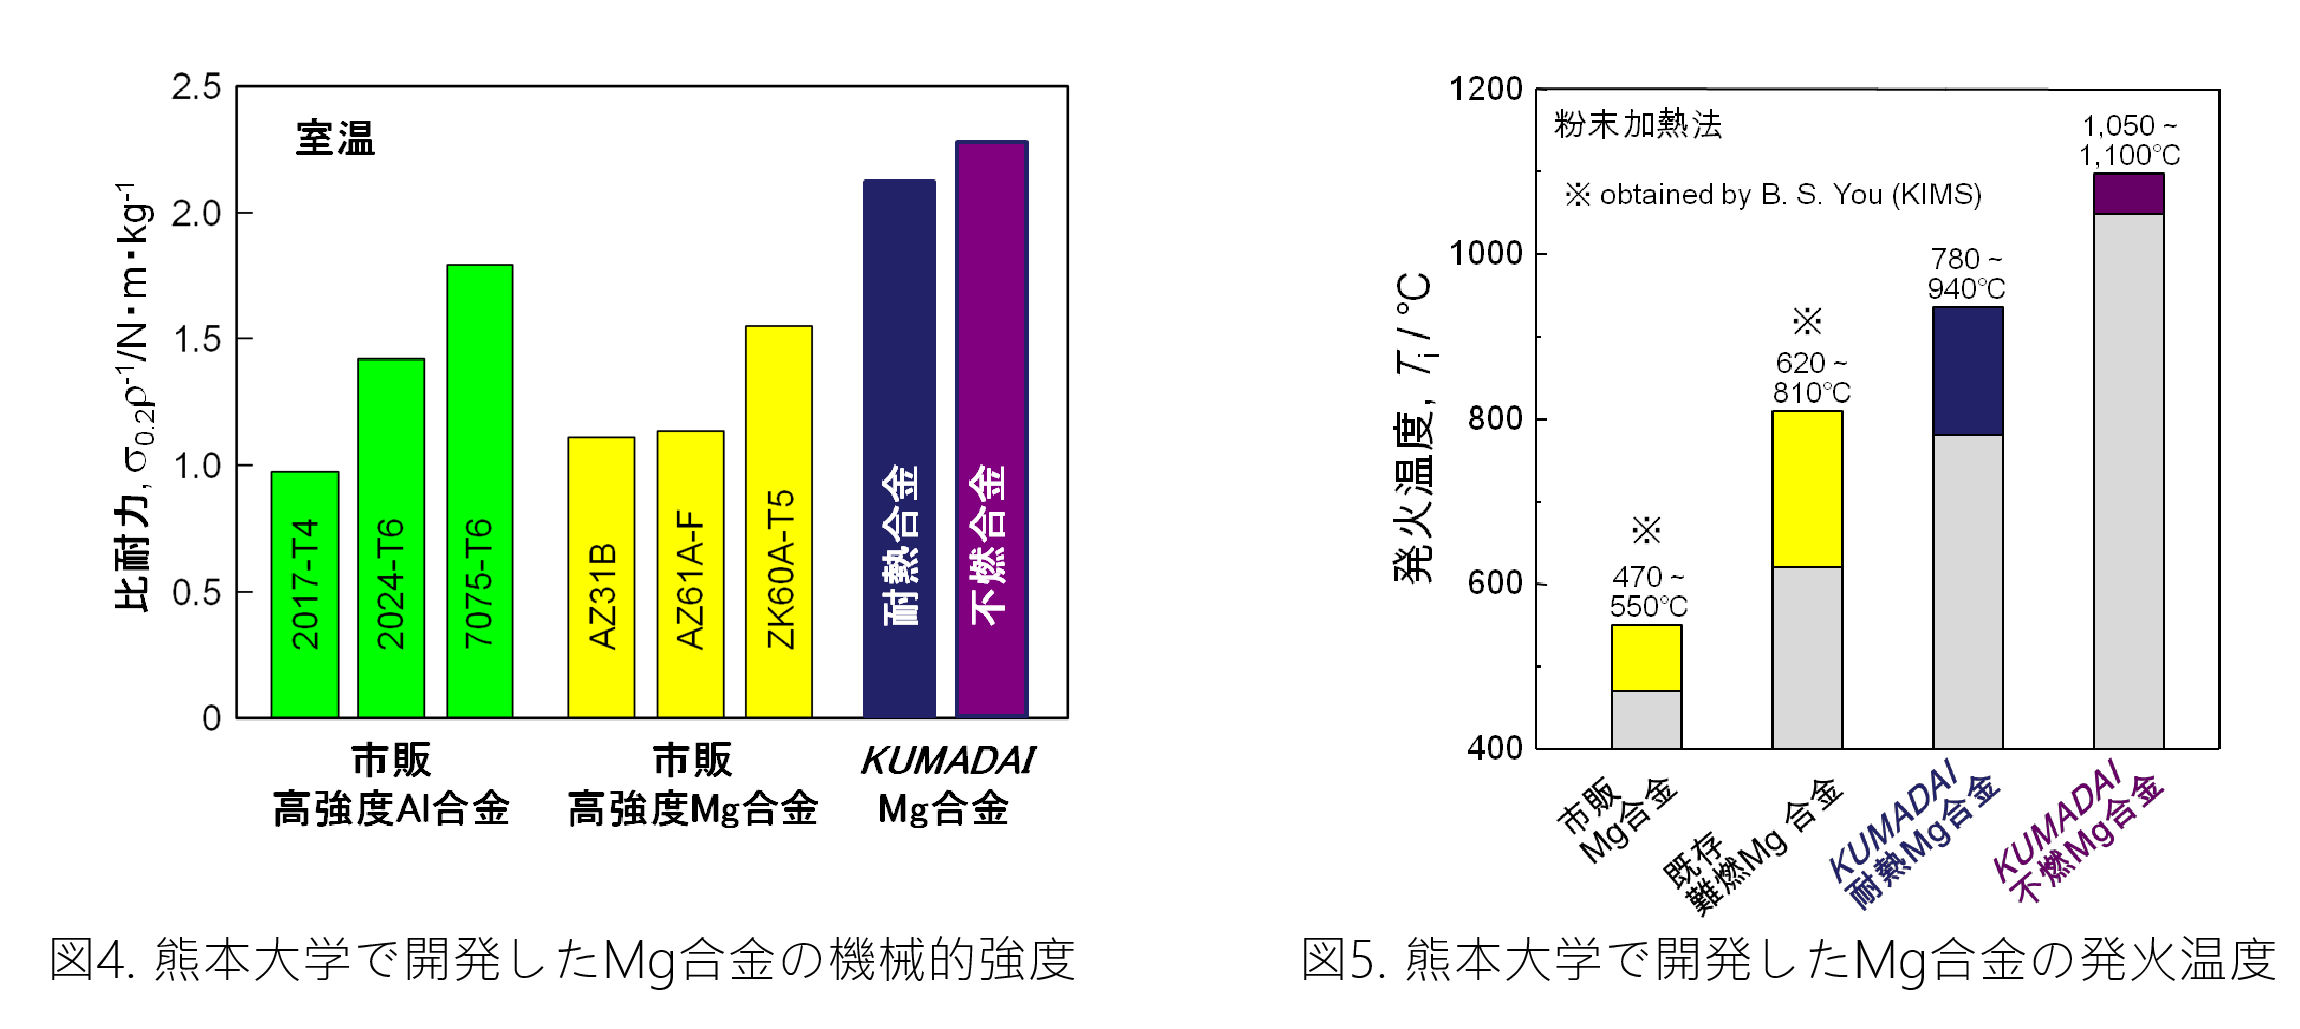 図4.熊本大学で開発したMg合金の機械的強度　図5.熊本大学で開発したMg合金の発火温度